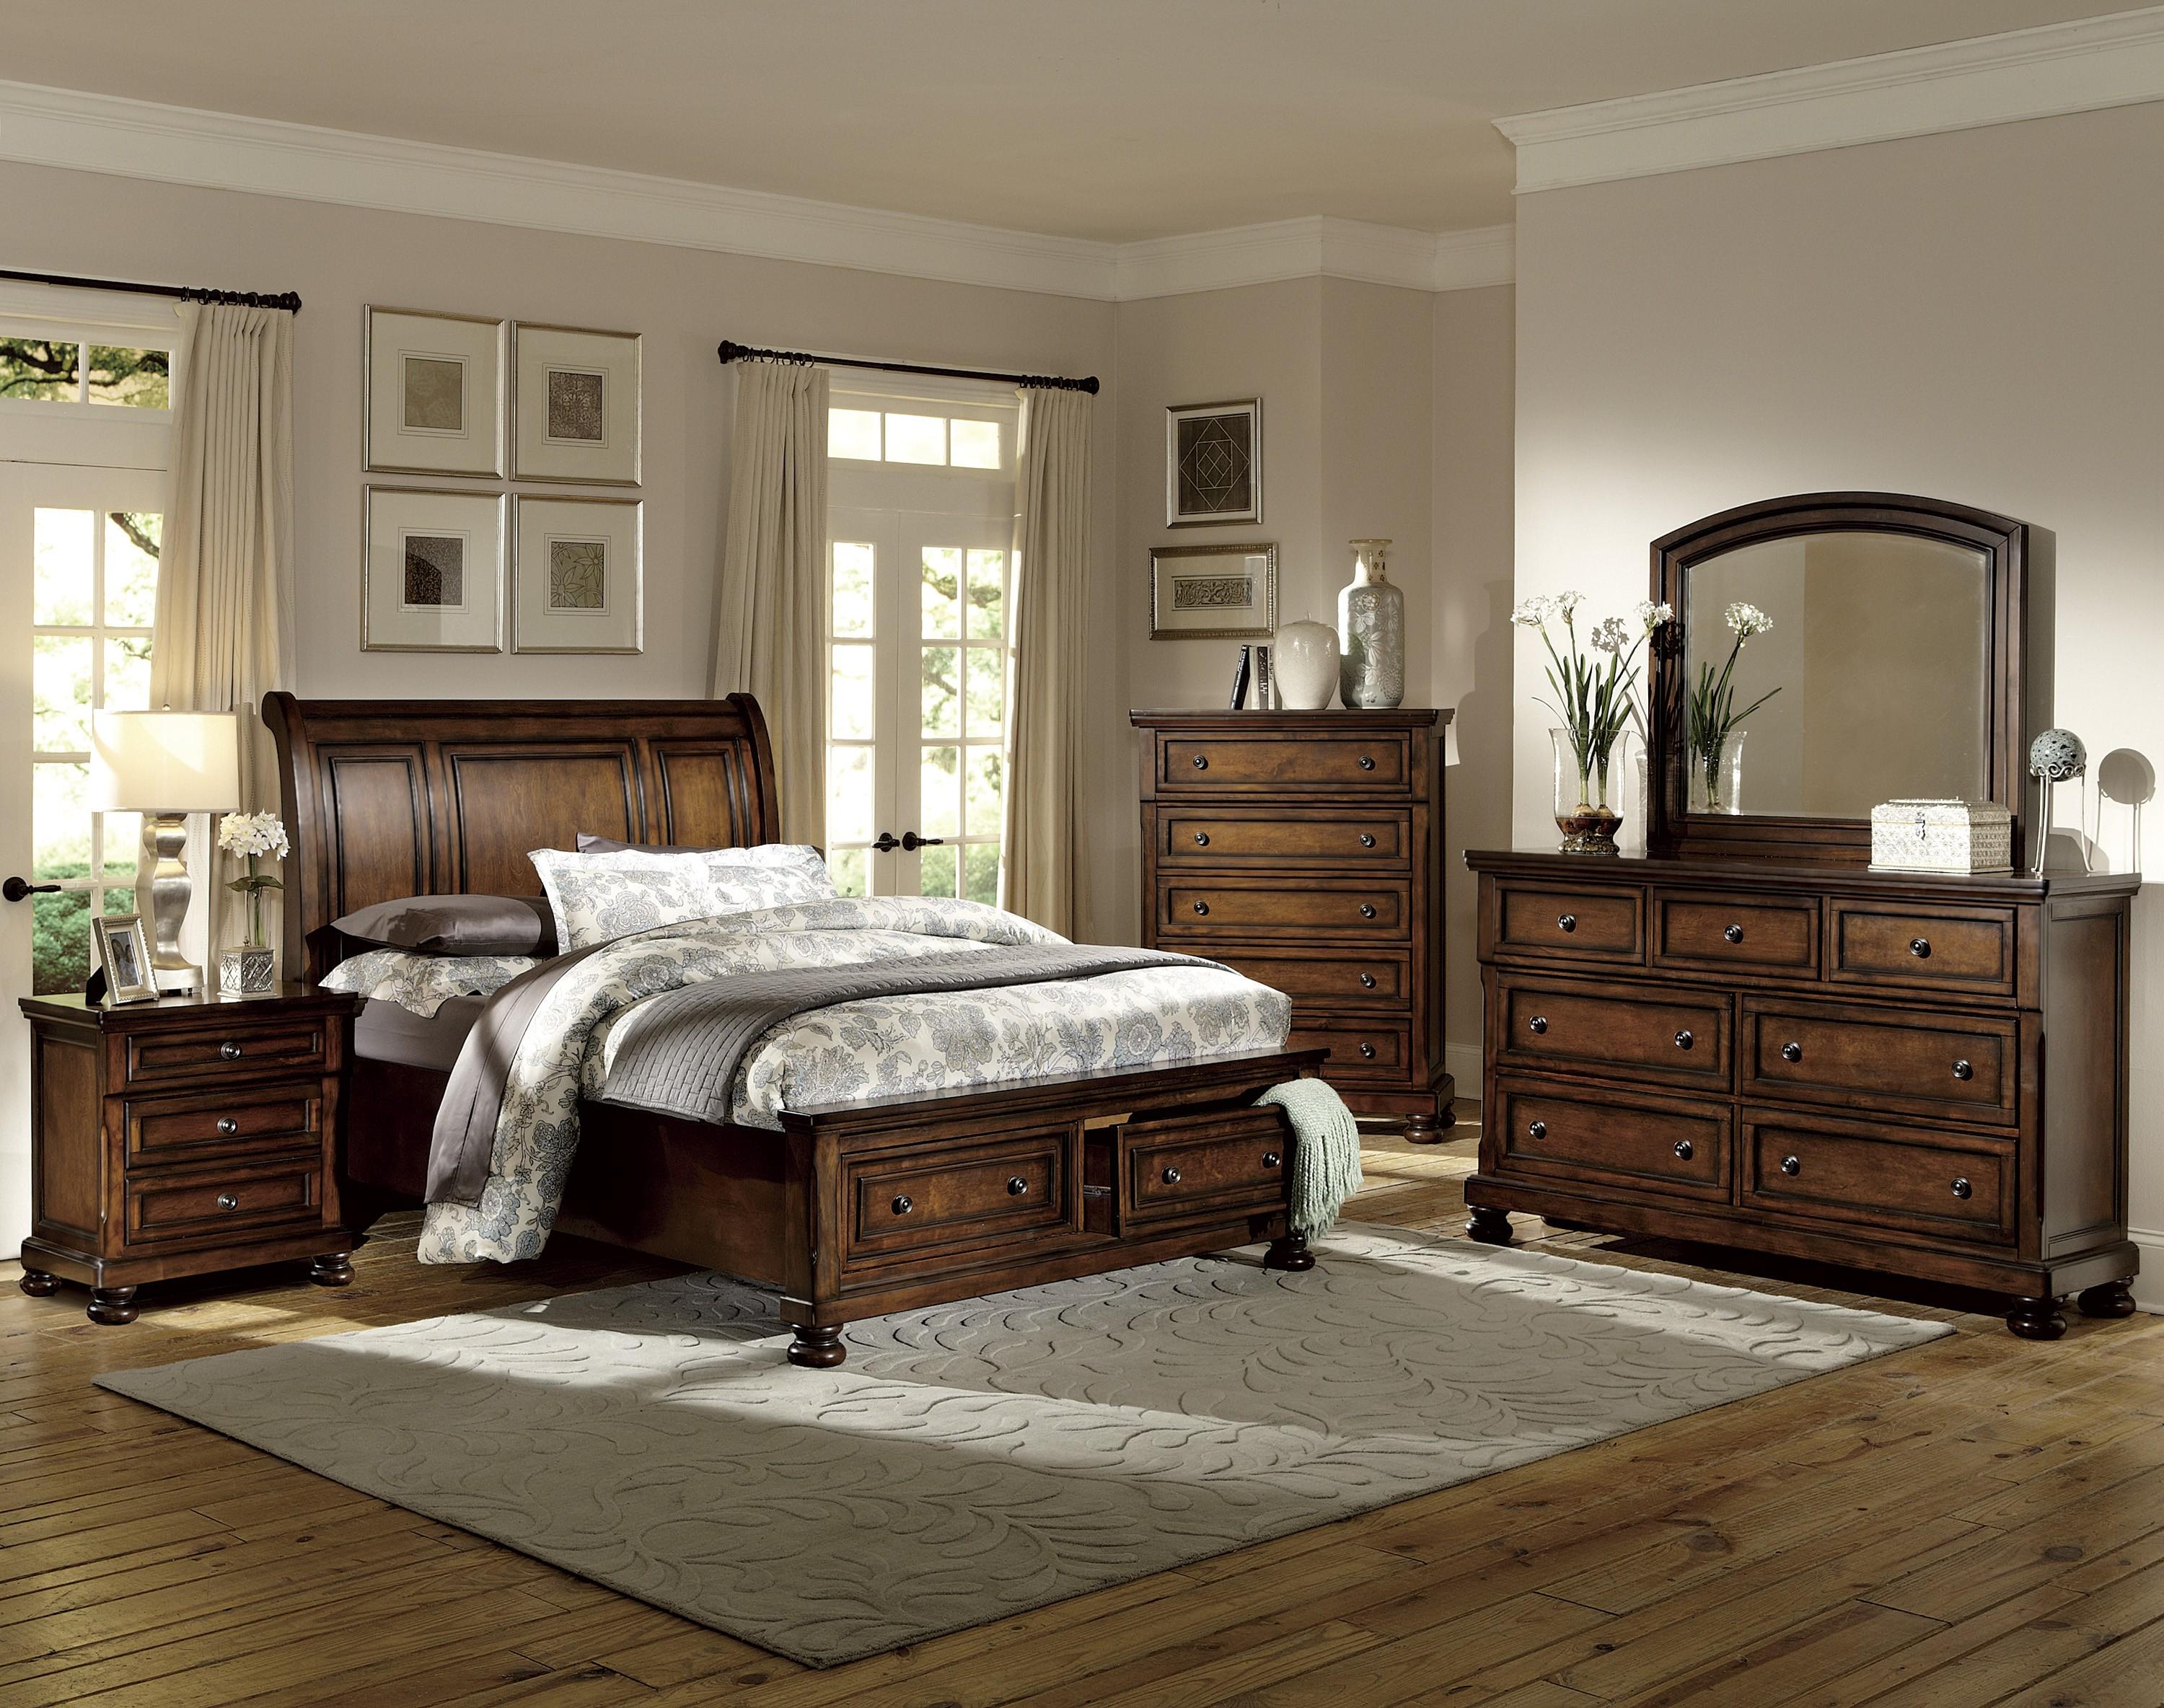 

    
Traditional Brown Cherry Wood King Bedroom Set 5pcs Homelegance 2159K-1EK* Cumberland
